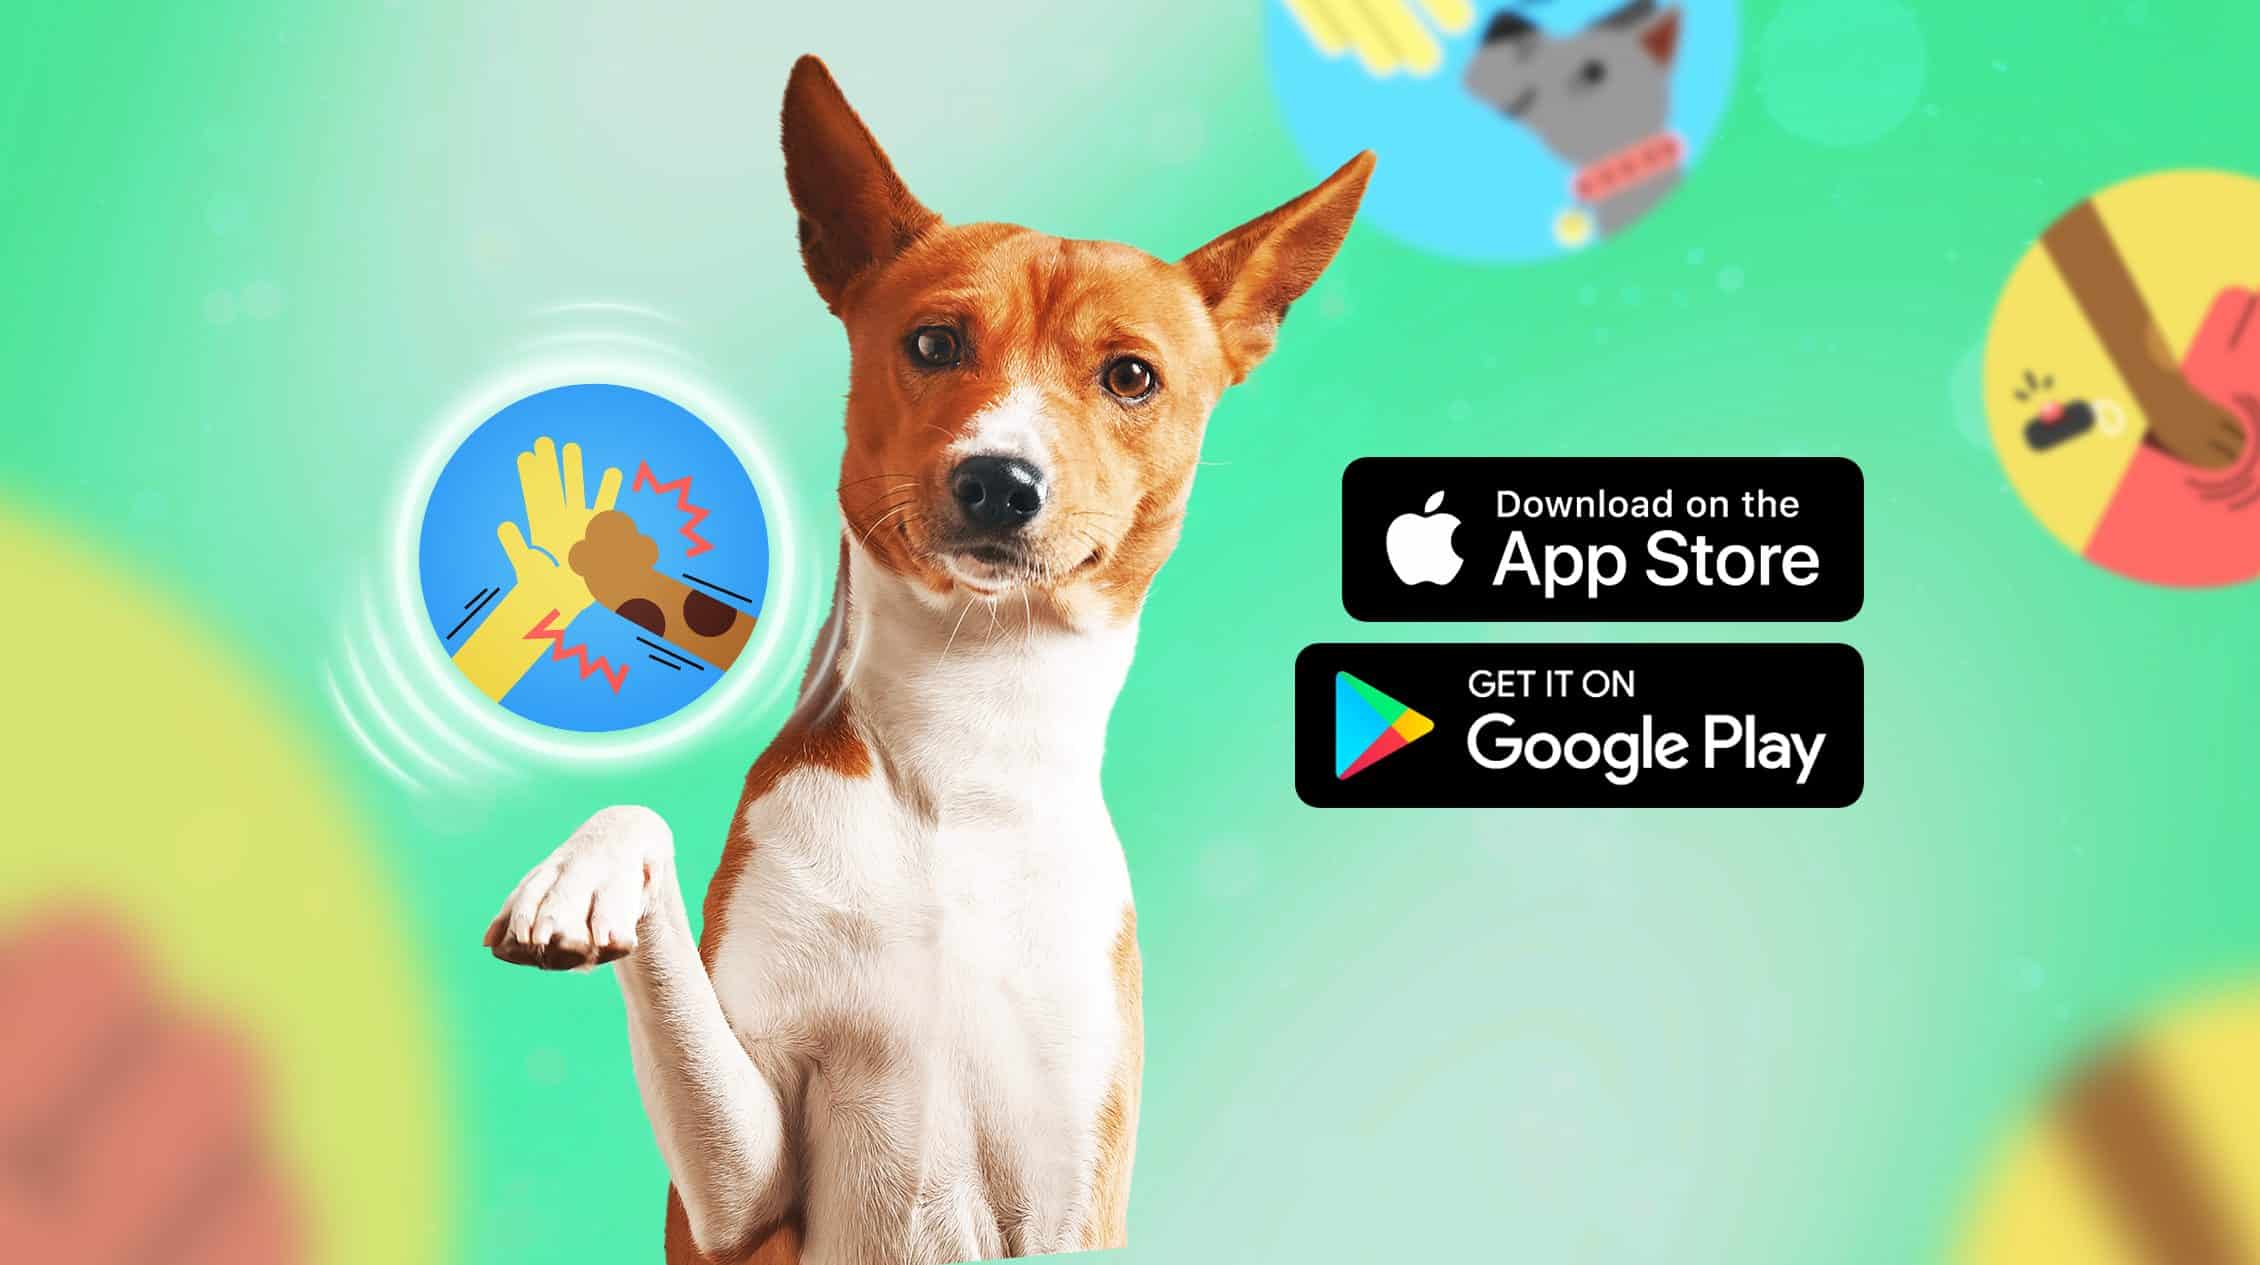 (c) Dogo.app